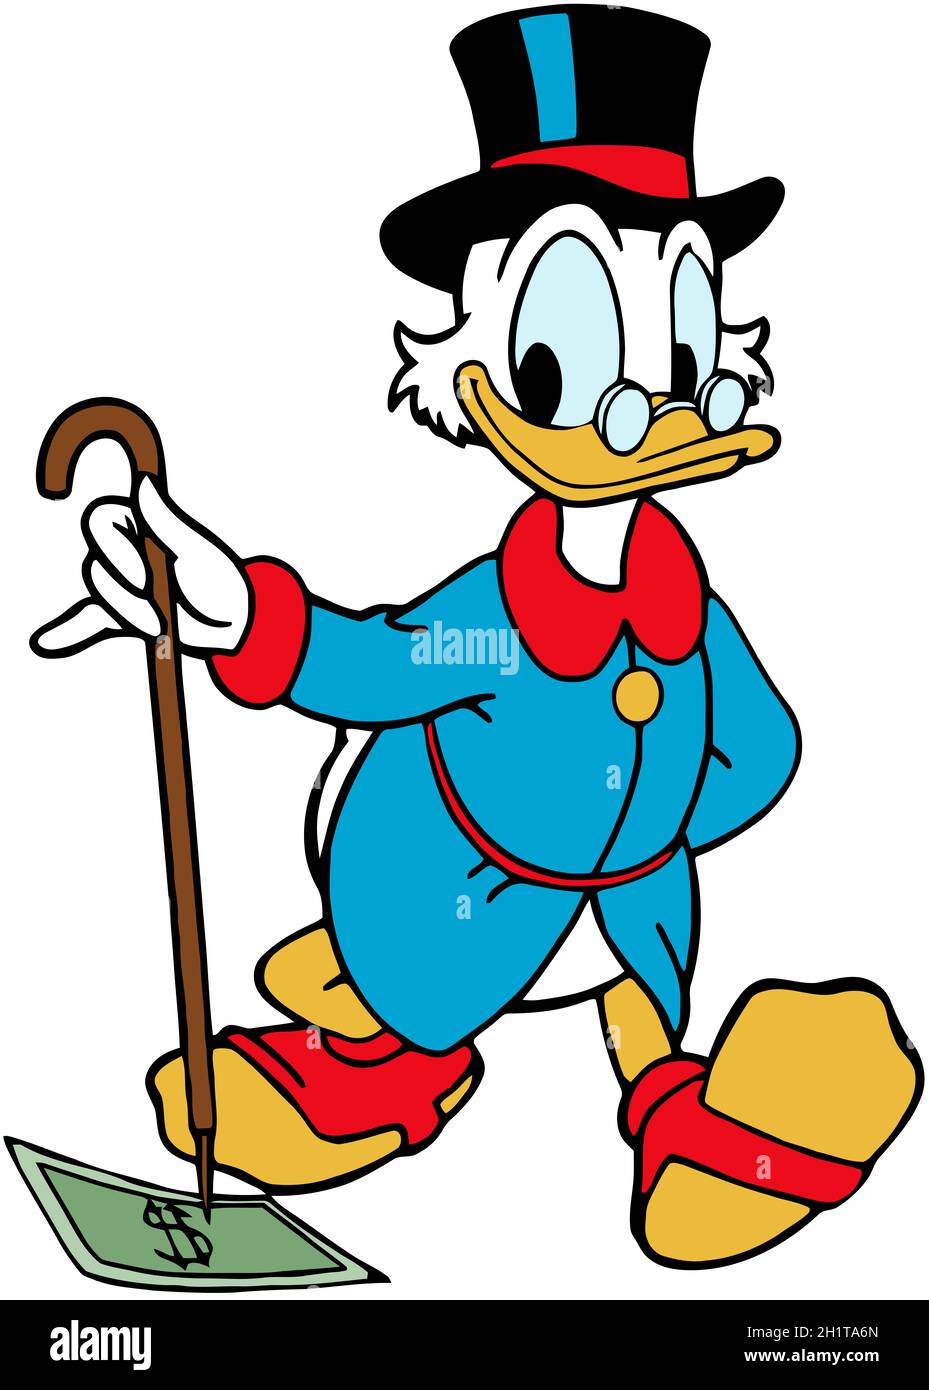 Donald duck illustration -Fotos und -Bildmaterial in hoher Auflösung – Alamy